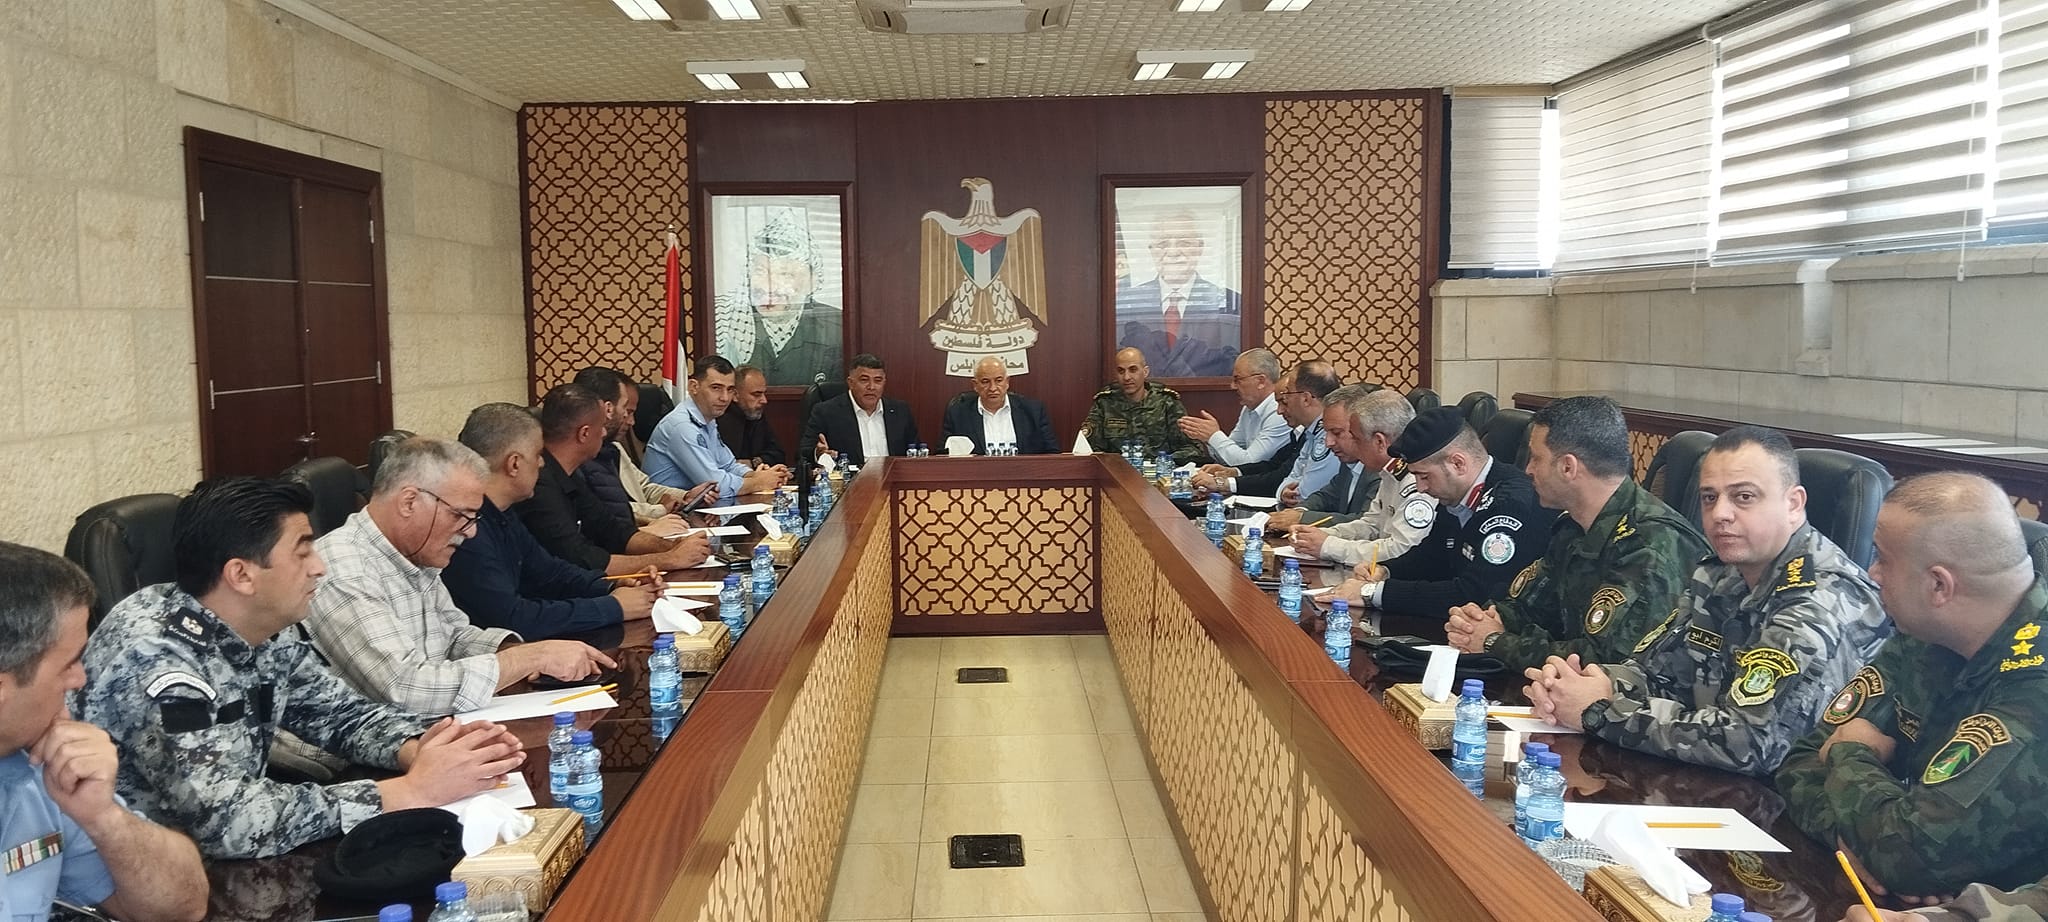 محافظ نابلس غسان دغلس يلتقي وزير الداخلية لبحث ملفات هامة في ظل الحصار
